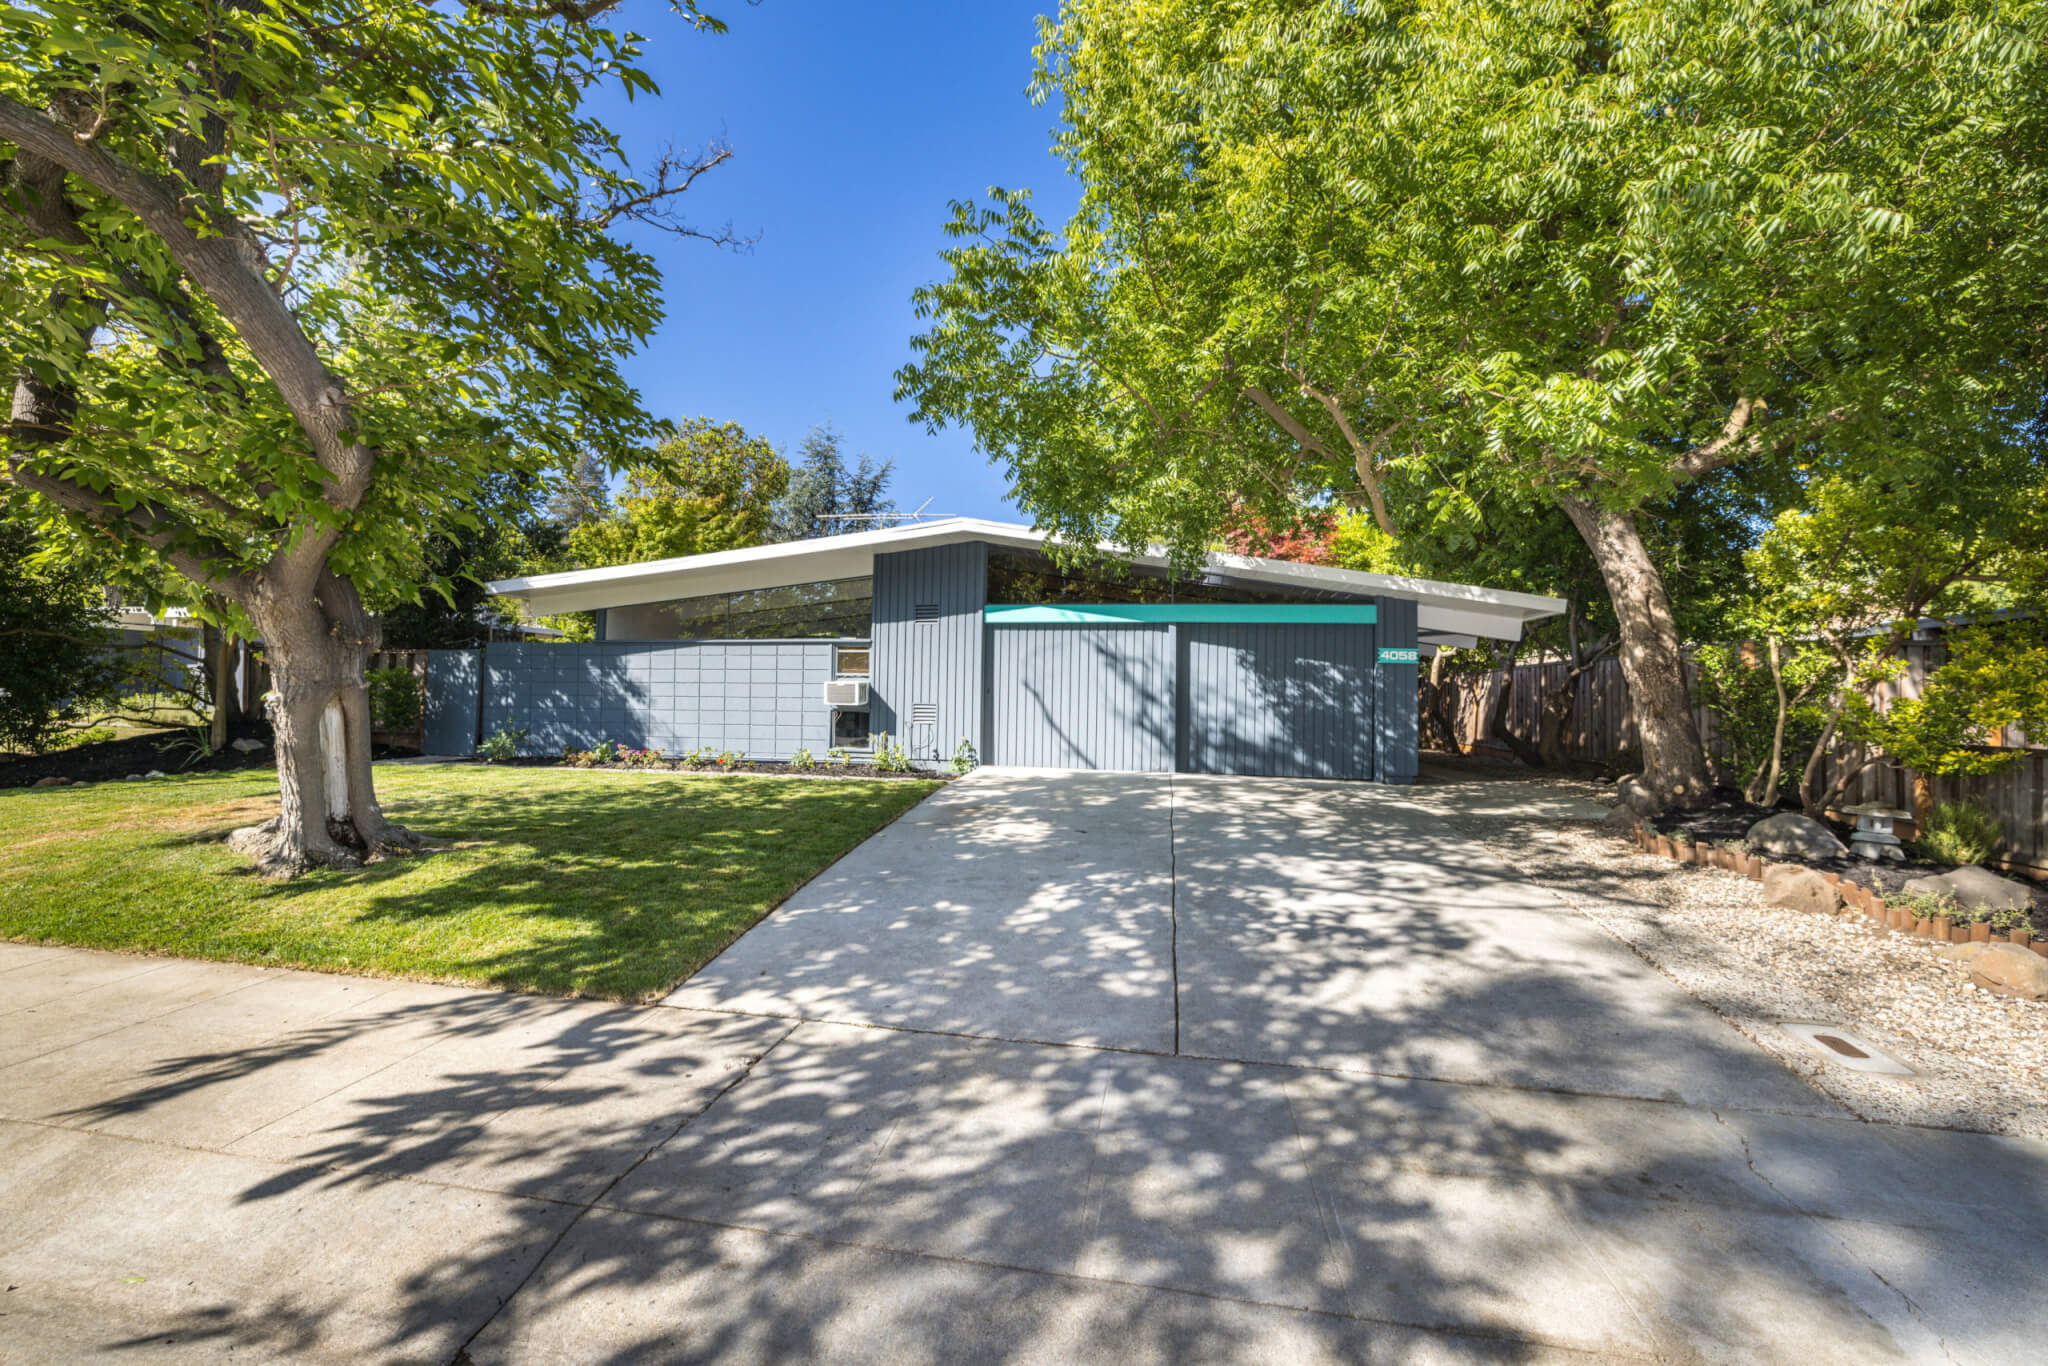 Palo Alto, Barron Park area, Real estate, Home buyers, 2050x1370 HD Desktop